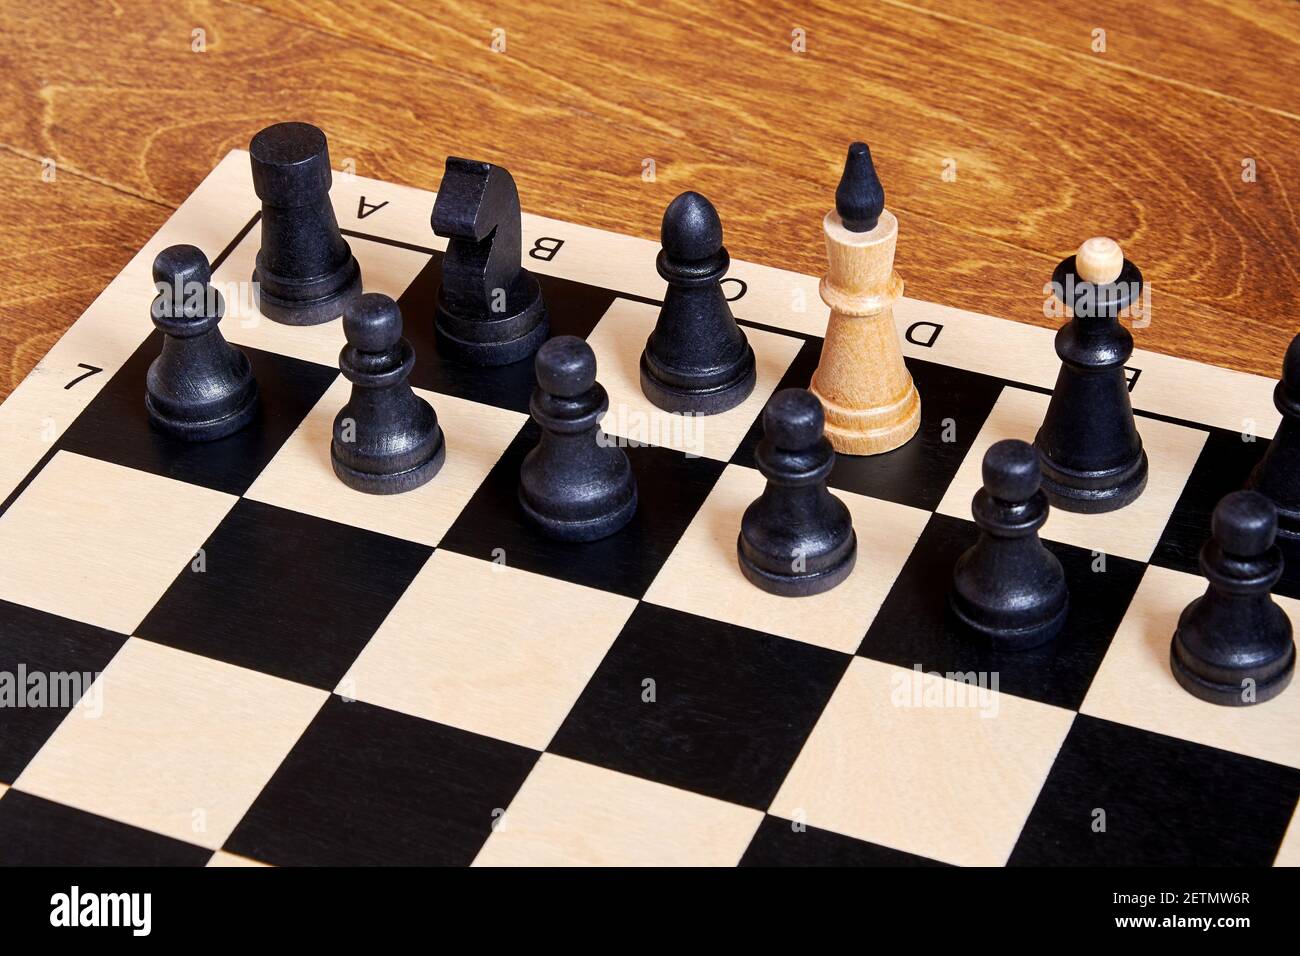 Représentation conceptuelle d'un traître au gouvernement basé sur des pièces d'échecs. Symbole d'espion et de double agent Banque D'Images